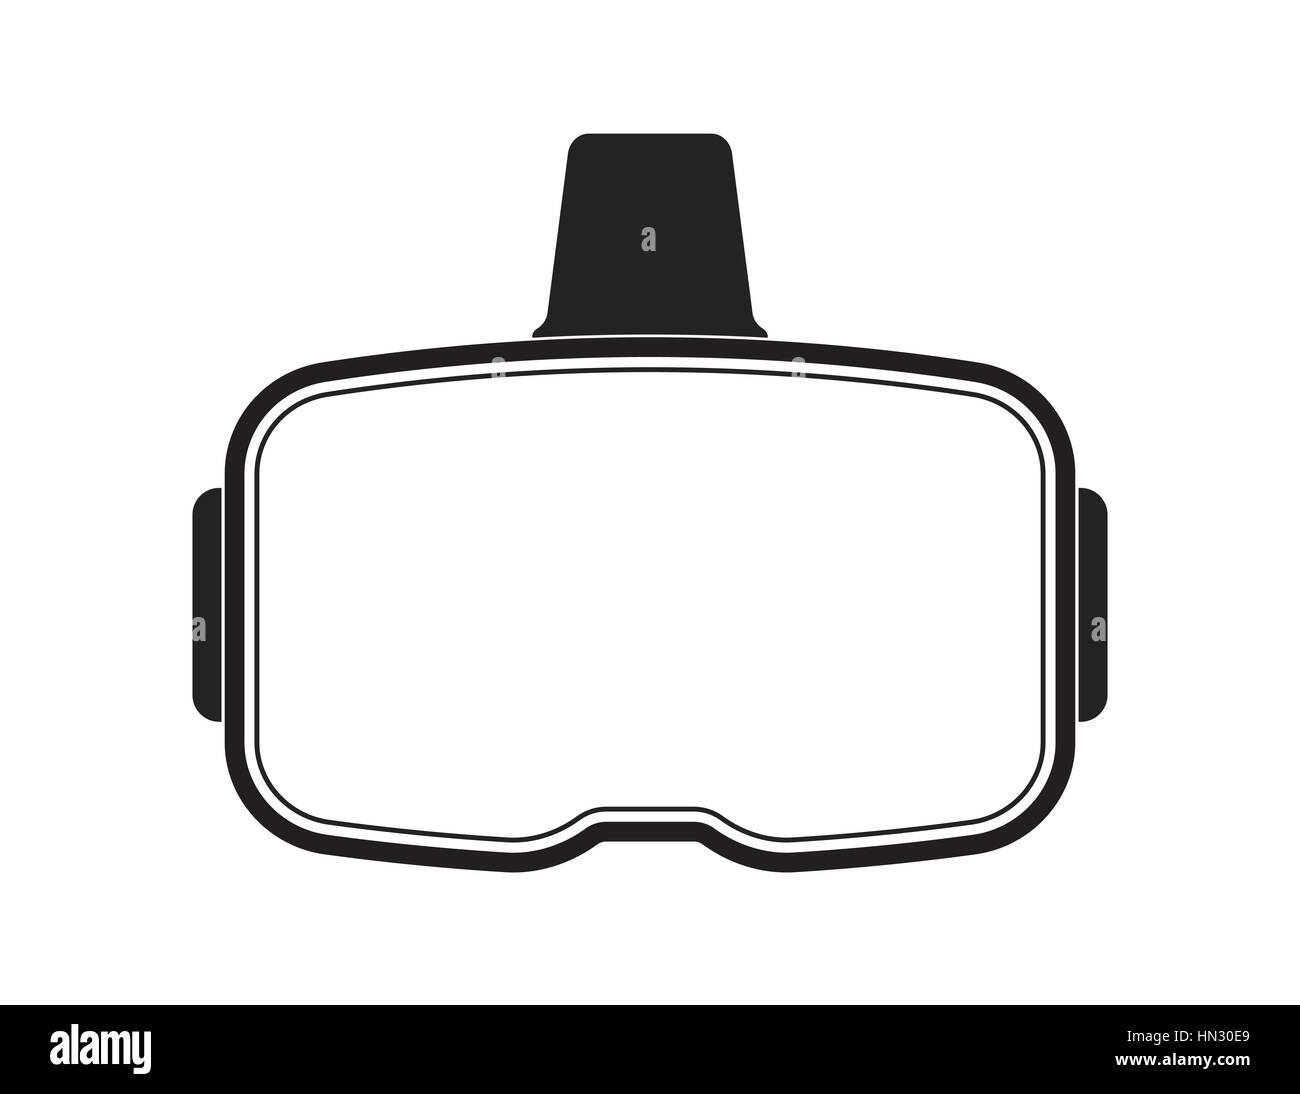 Oculus Rift-like VR headset with blank visor for custom modifications Stock Photo